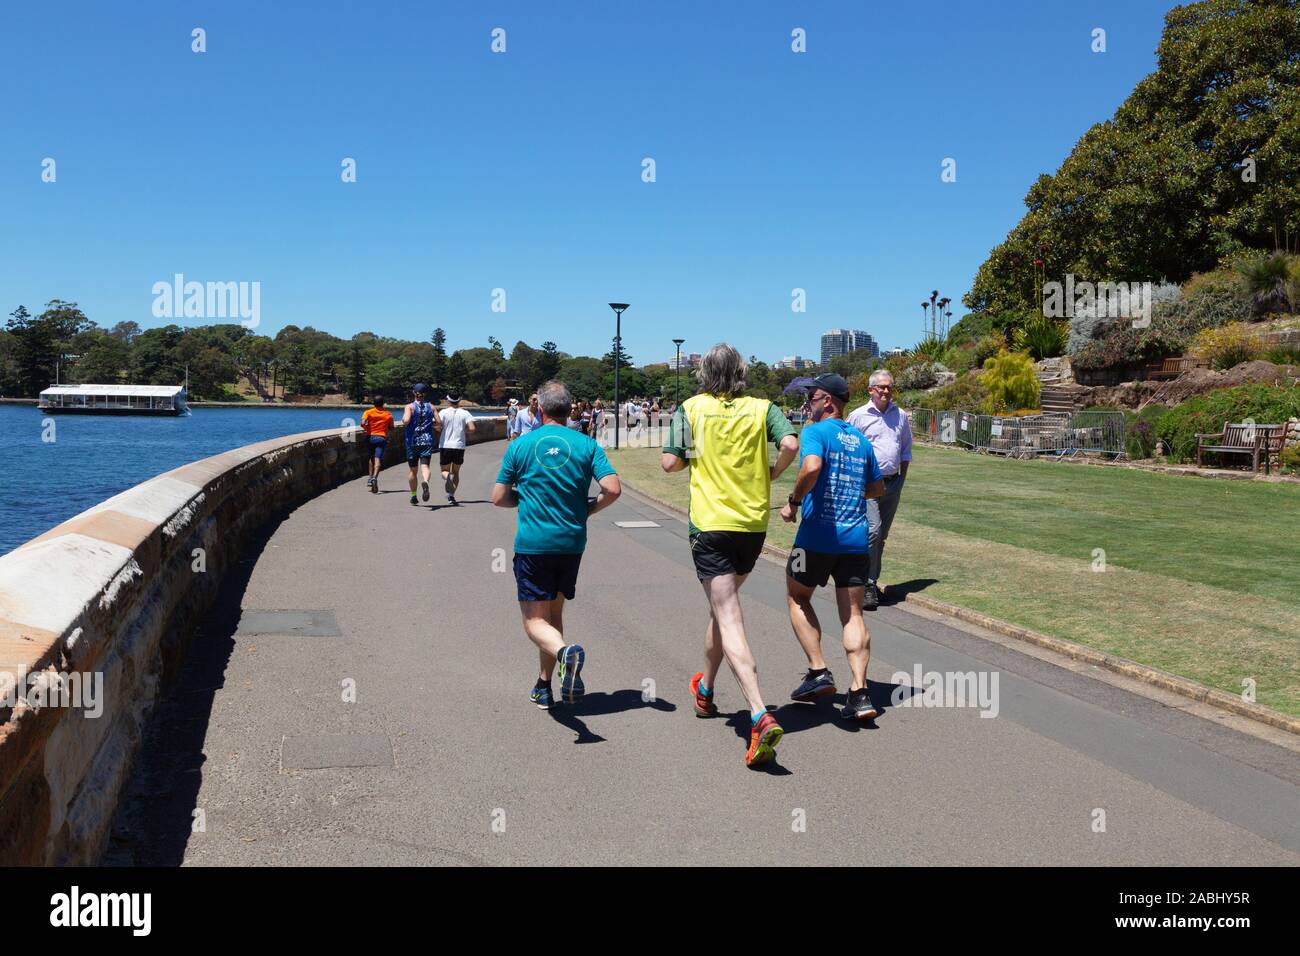 Stile di vita di Sydney; jogging nei giardini botanici, porto di Sydney, Sydney Australia - esempio di stile di vita australiano Foto Stock